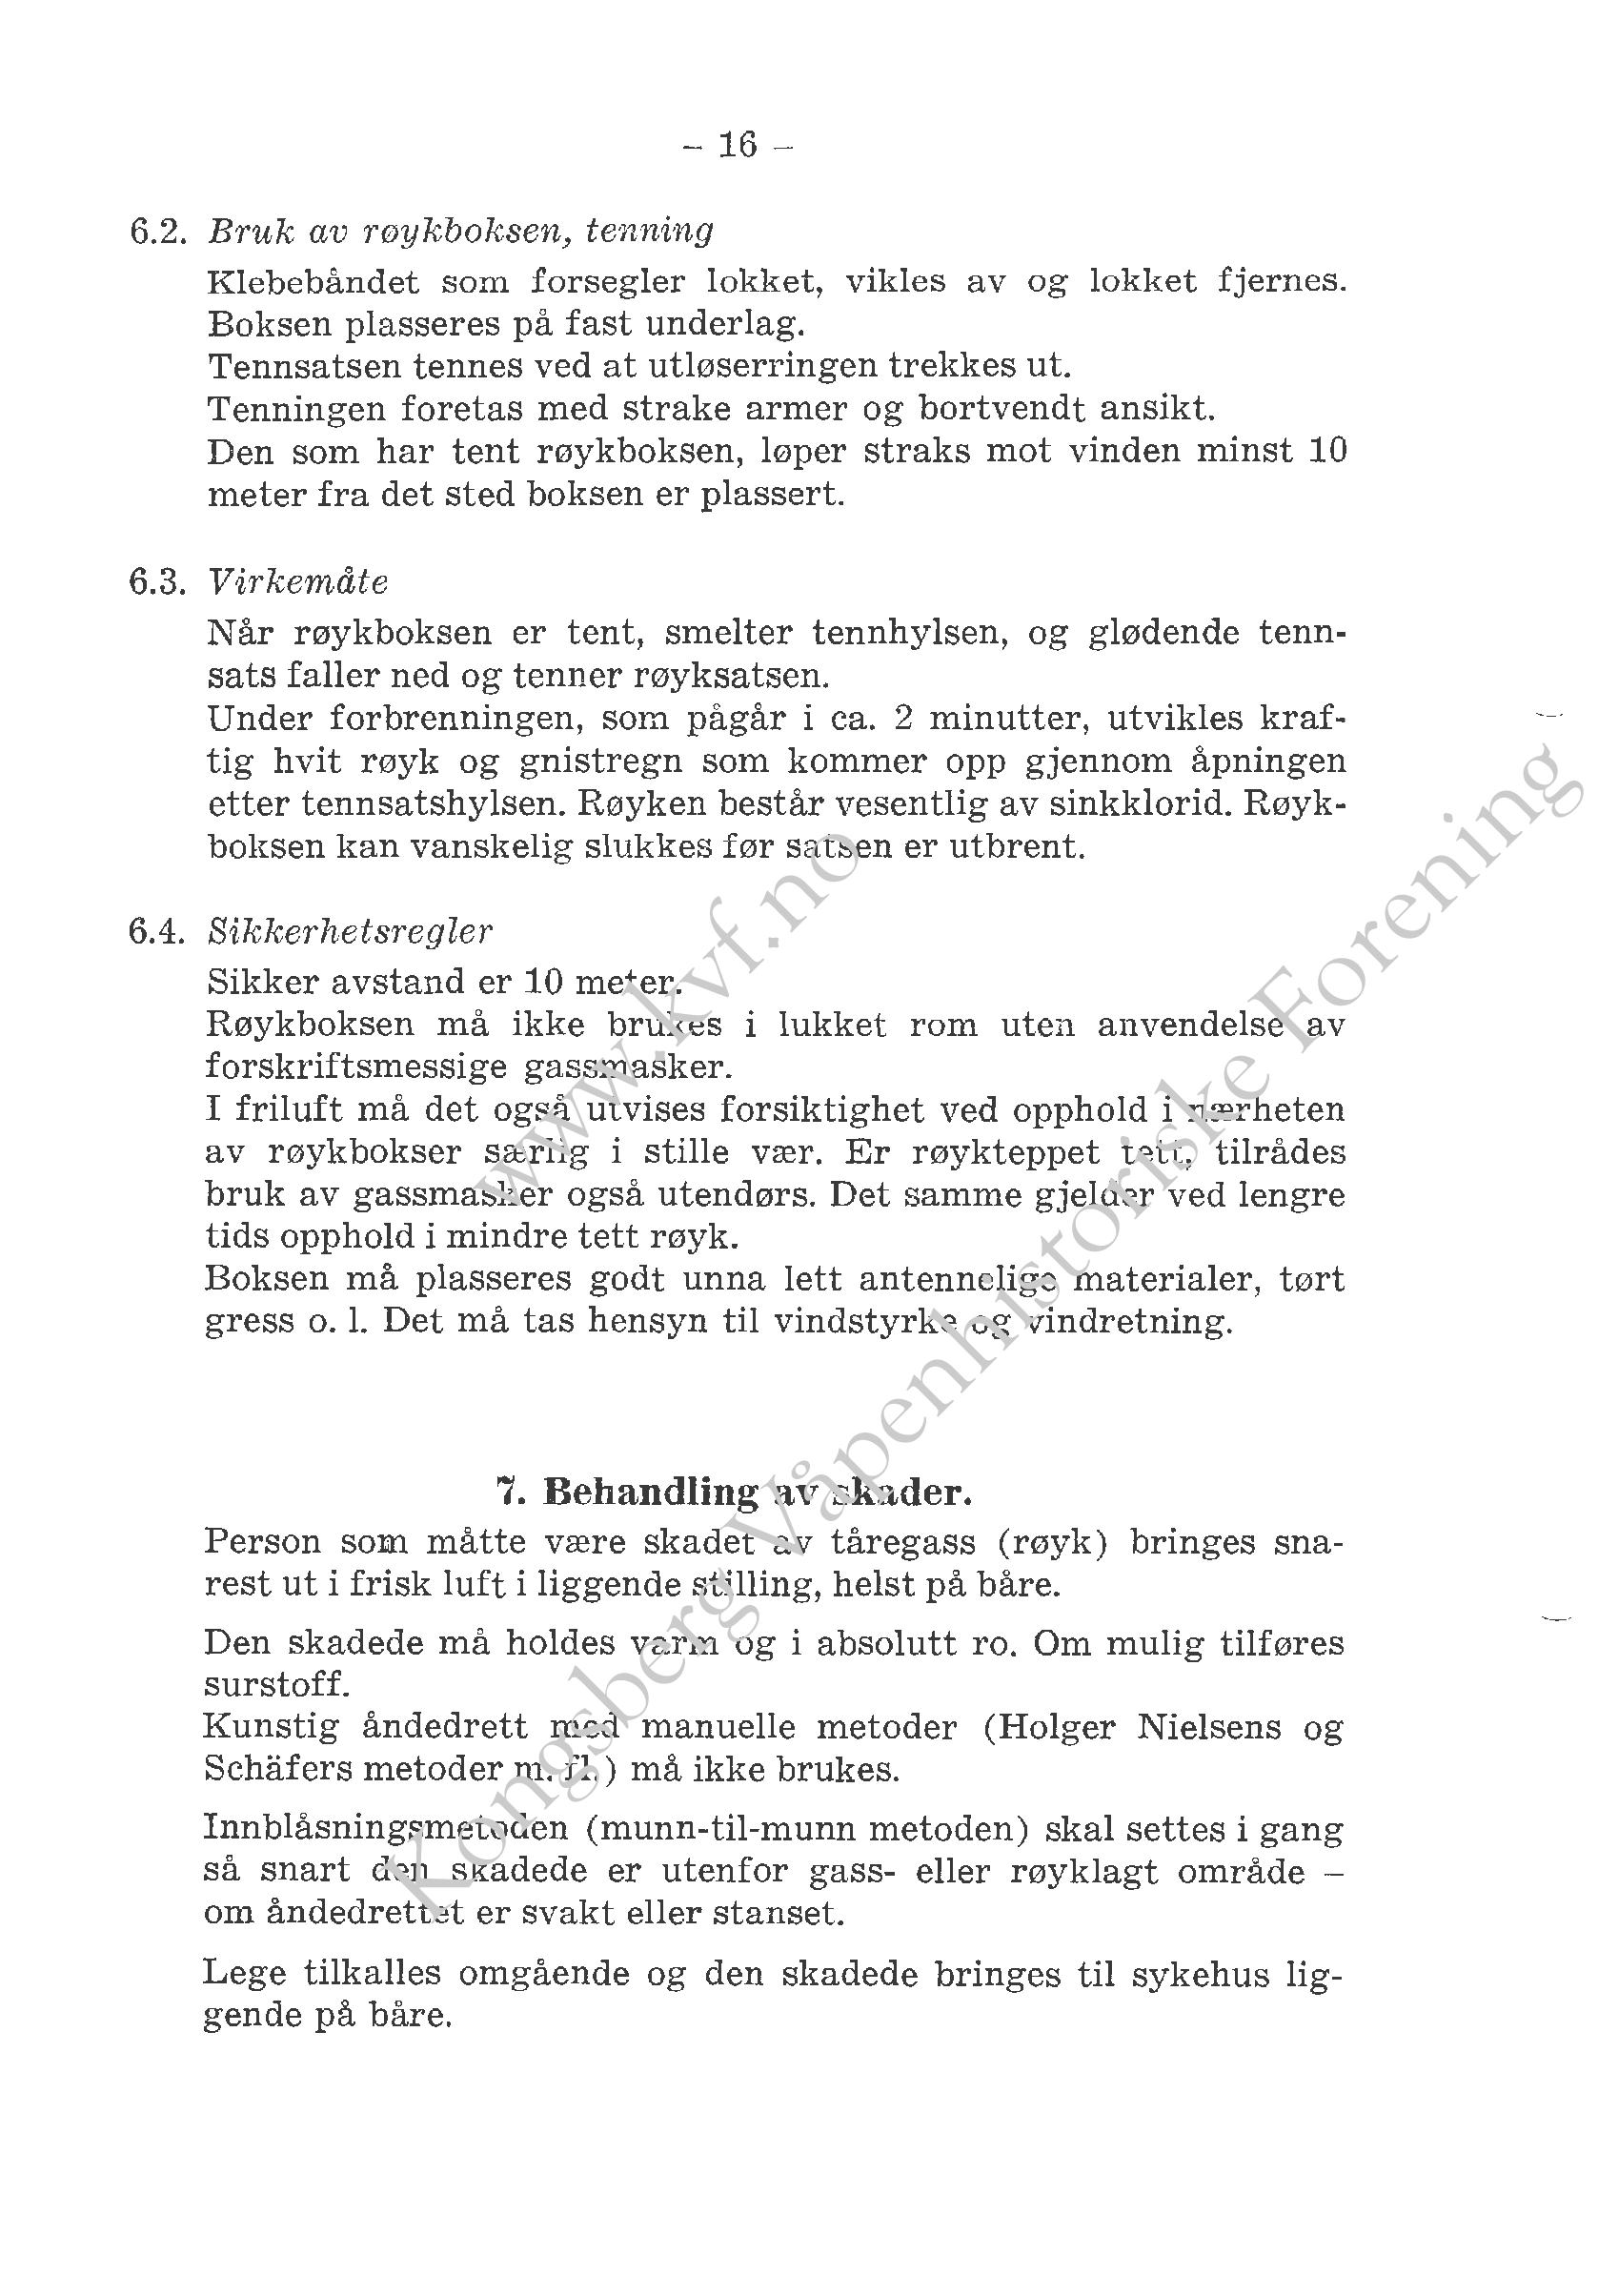 ./doc/reglement/Gasspistol/Beskrivelse-Signal-Gasspistol-1966-page-019.jpg